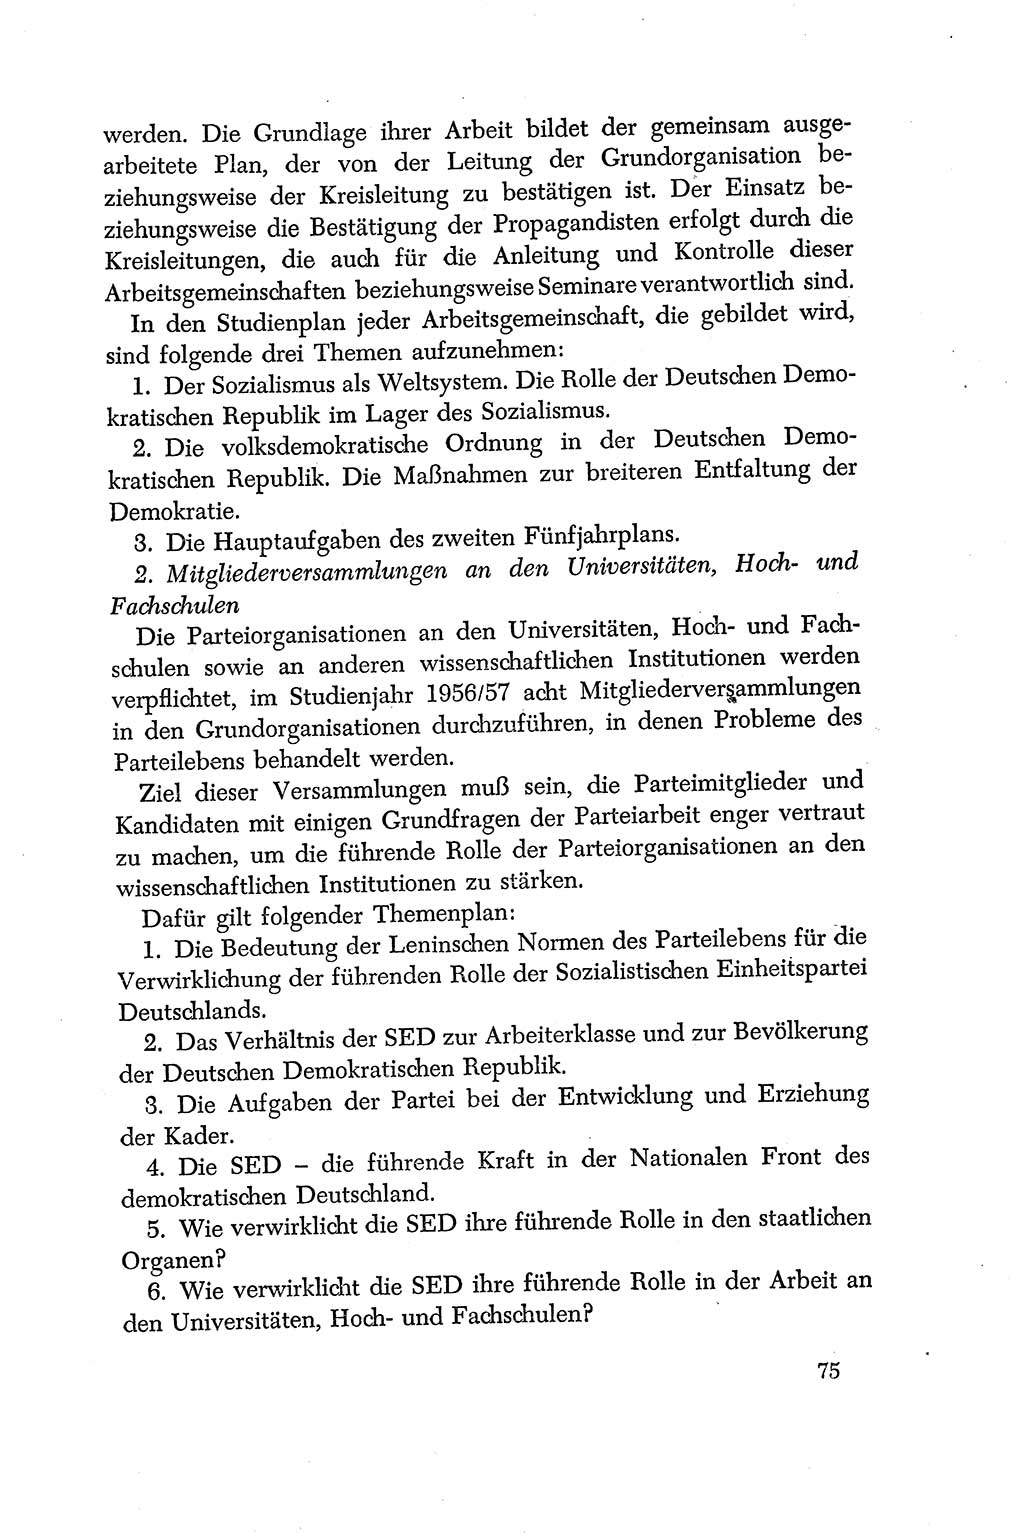 Dokumente der Sozialistischen Einheitspartei Deutschlands (SED) [Deutsche Demokratische Republik (DDR)] 1956-1957, Seite 75 (Dok. SED DDR 1956-1957, S. 75)